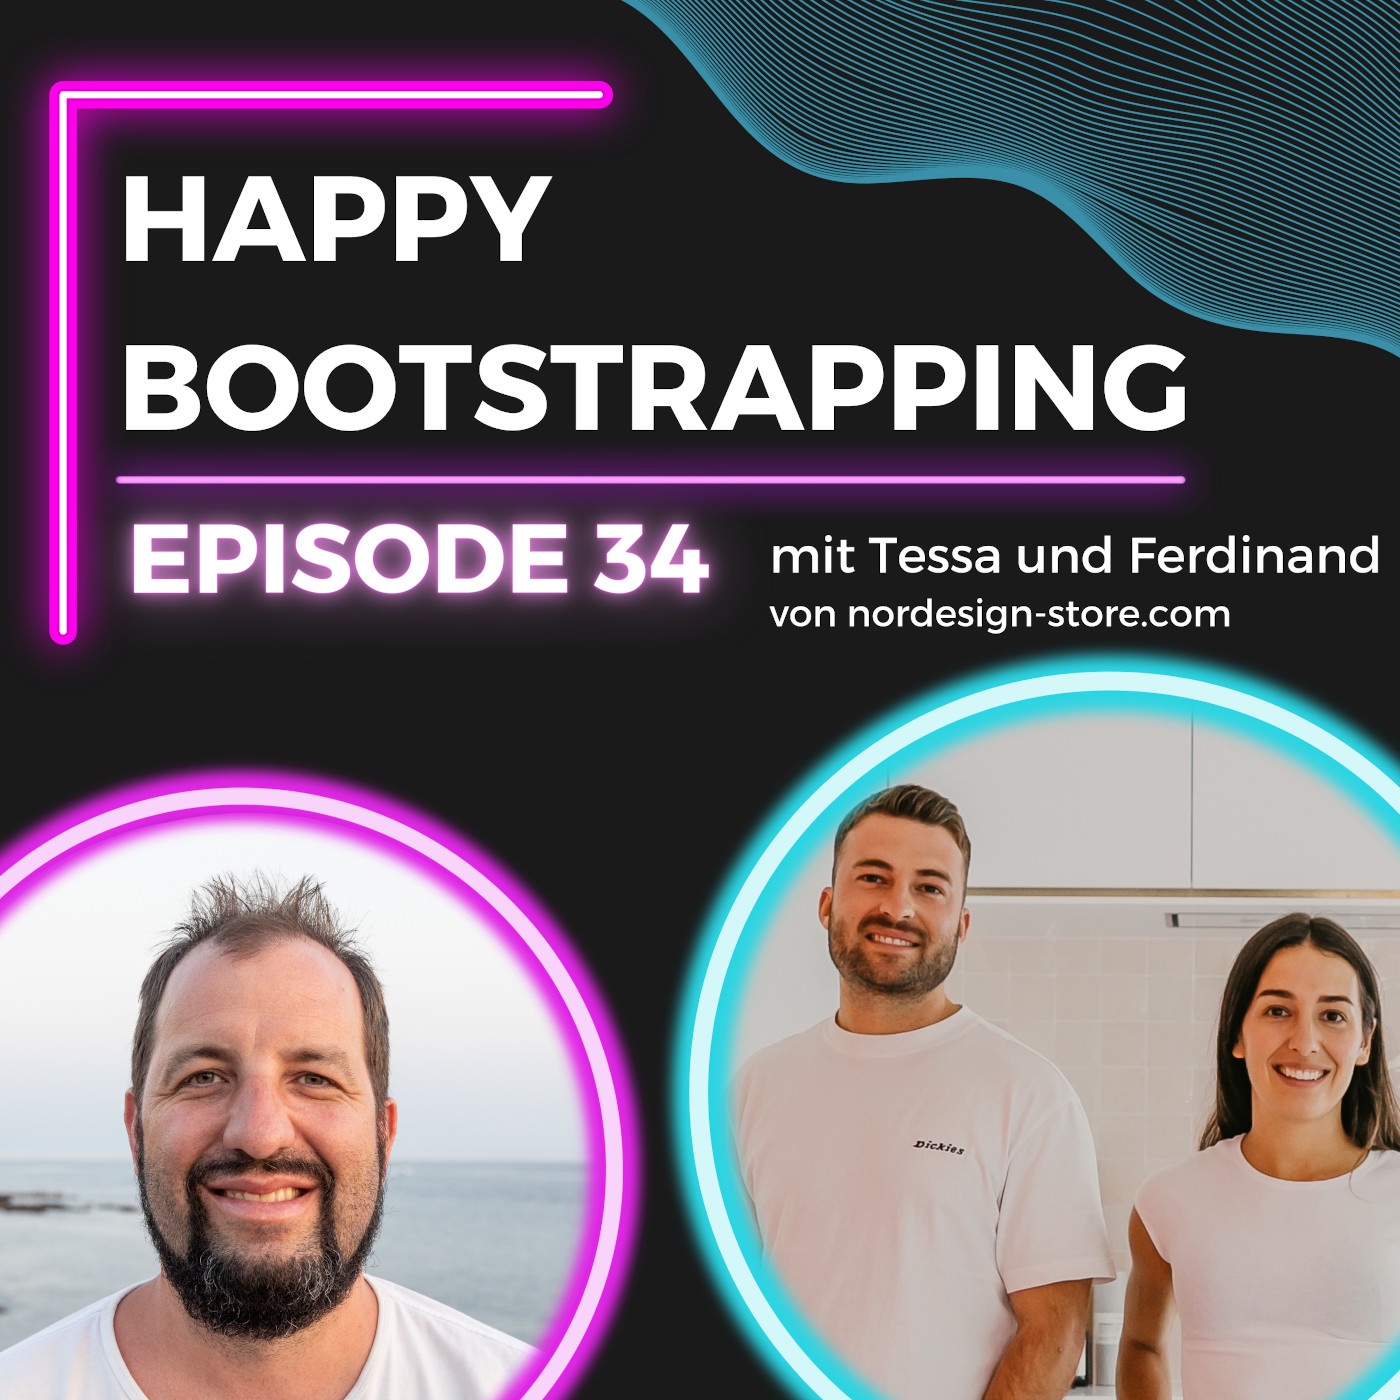 Nachhaltige Küchenutensilien & Bootstrapping als Geschwister | Tessa und Ferdinand von nordesign-store.com (#34)